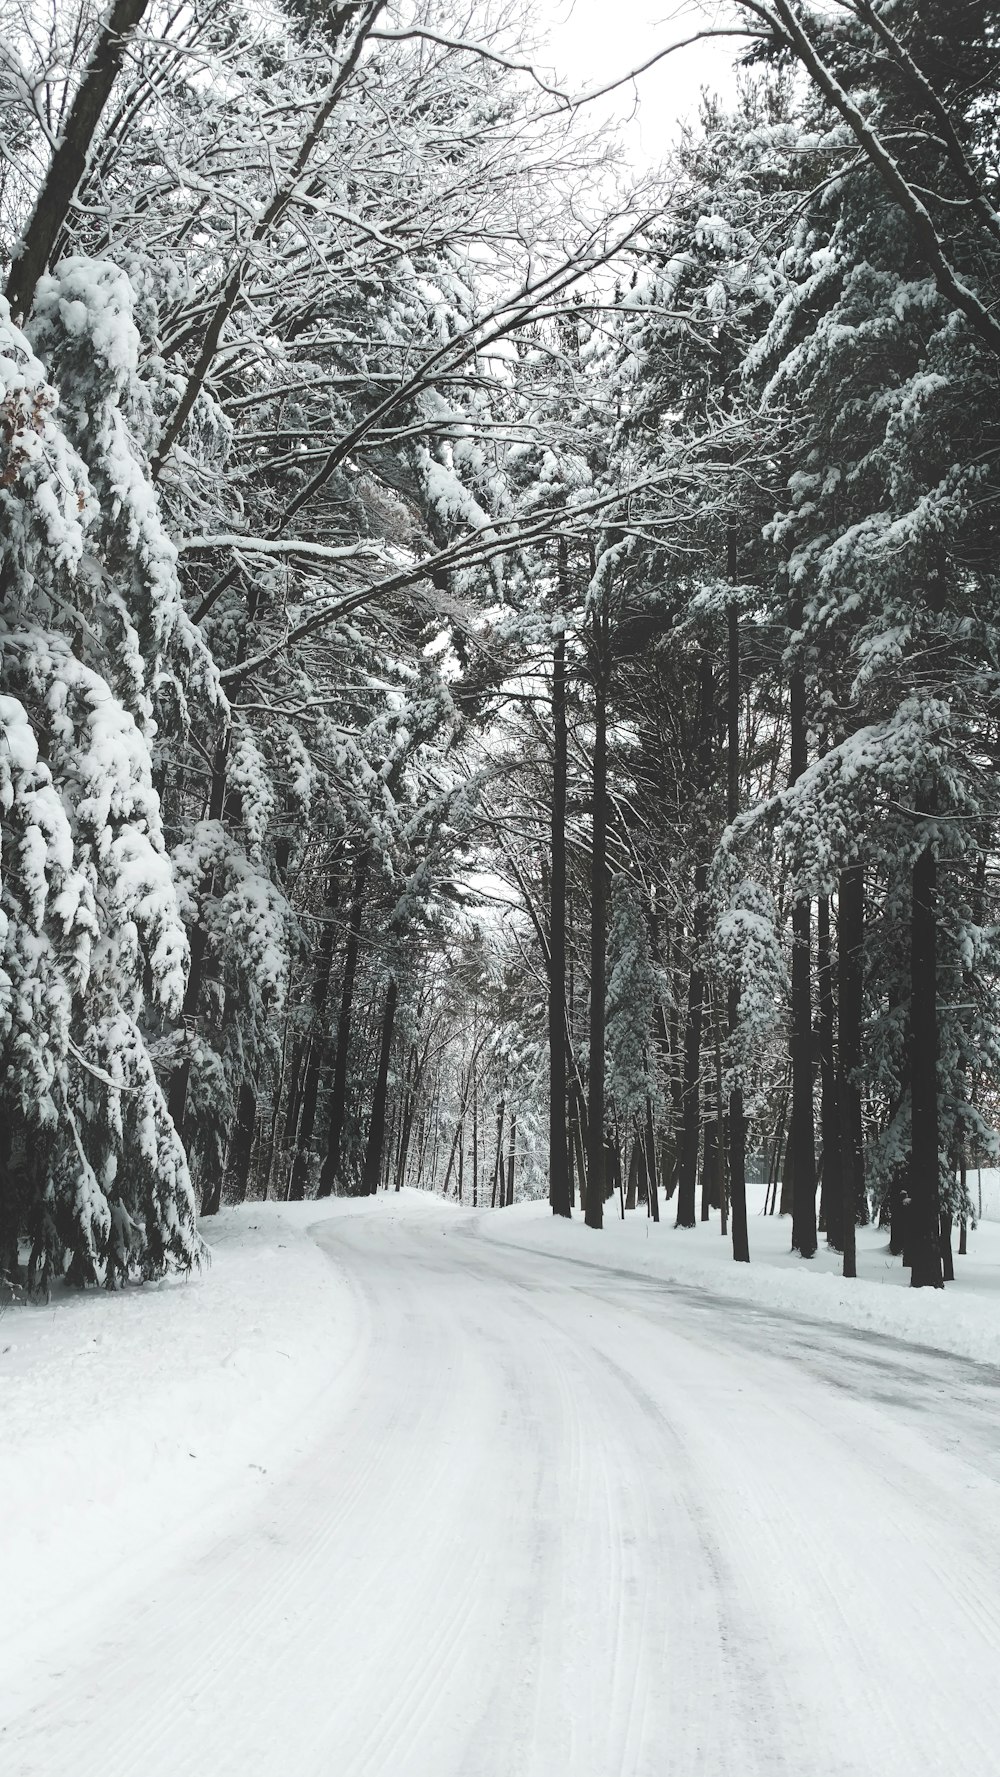 estrada cercada por árvores durante o inverno